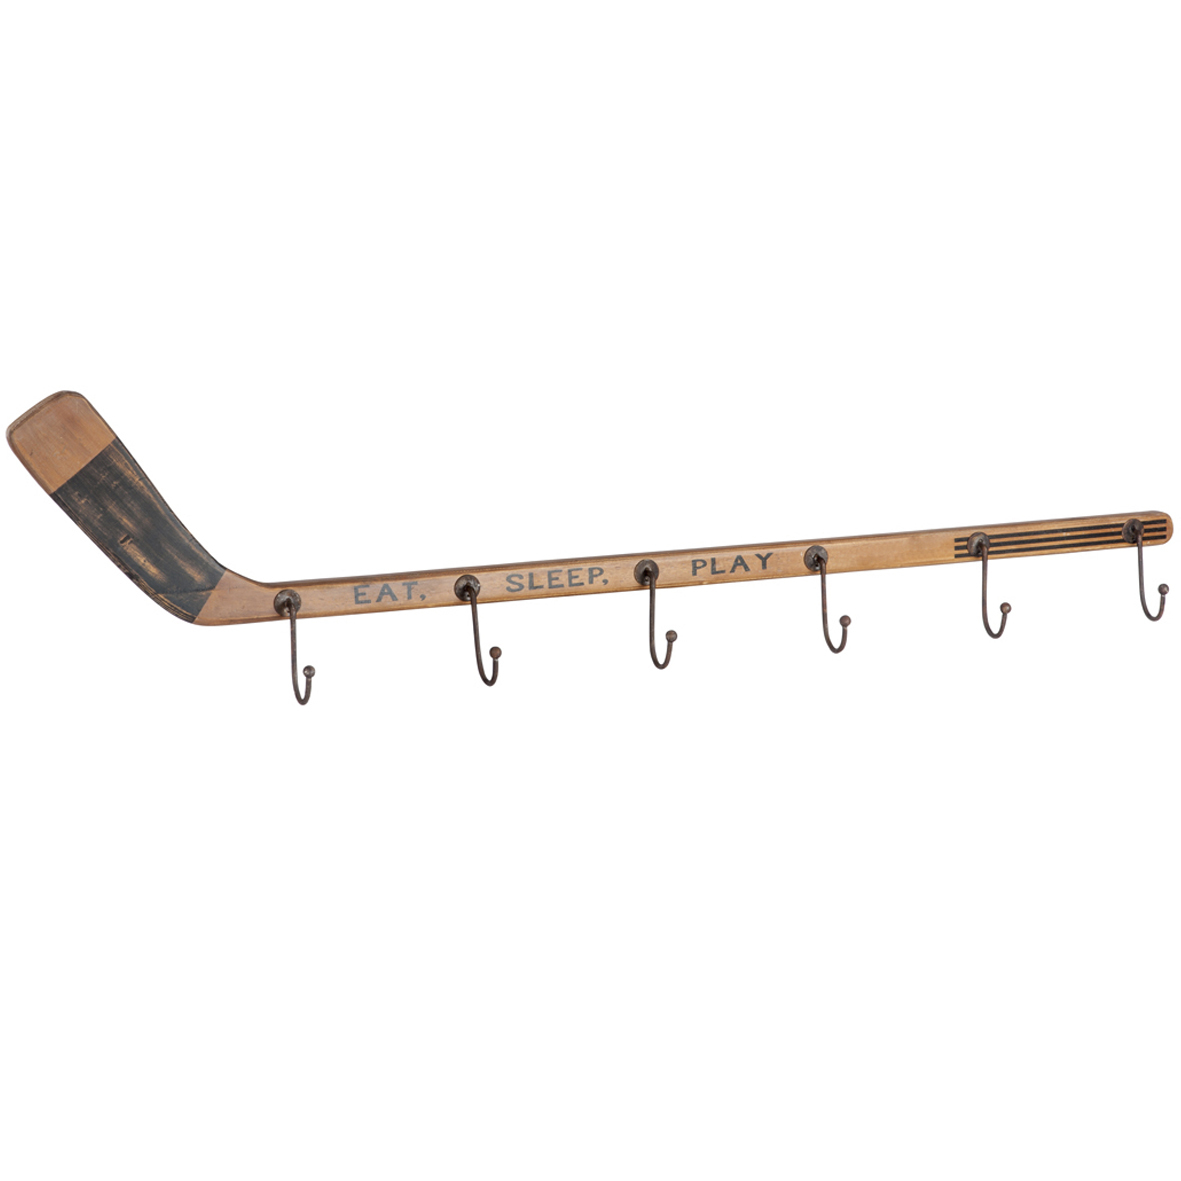 вешалка из полипропиленовых труб для хоккейной формы